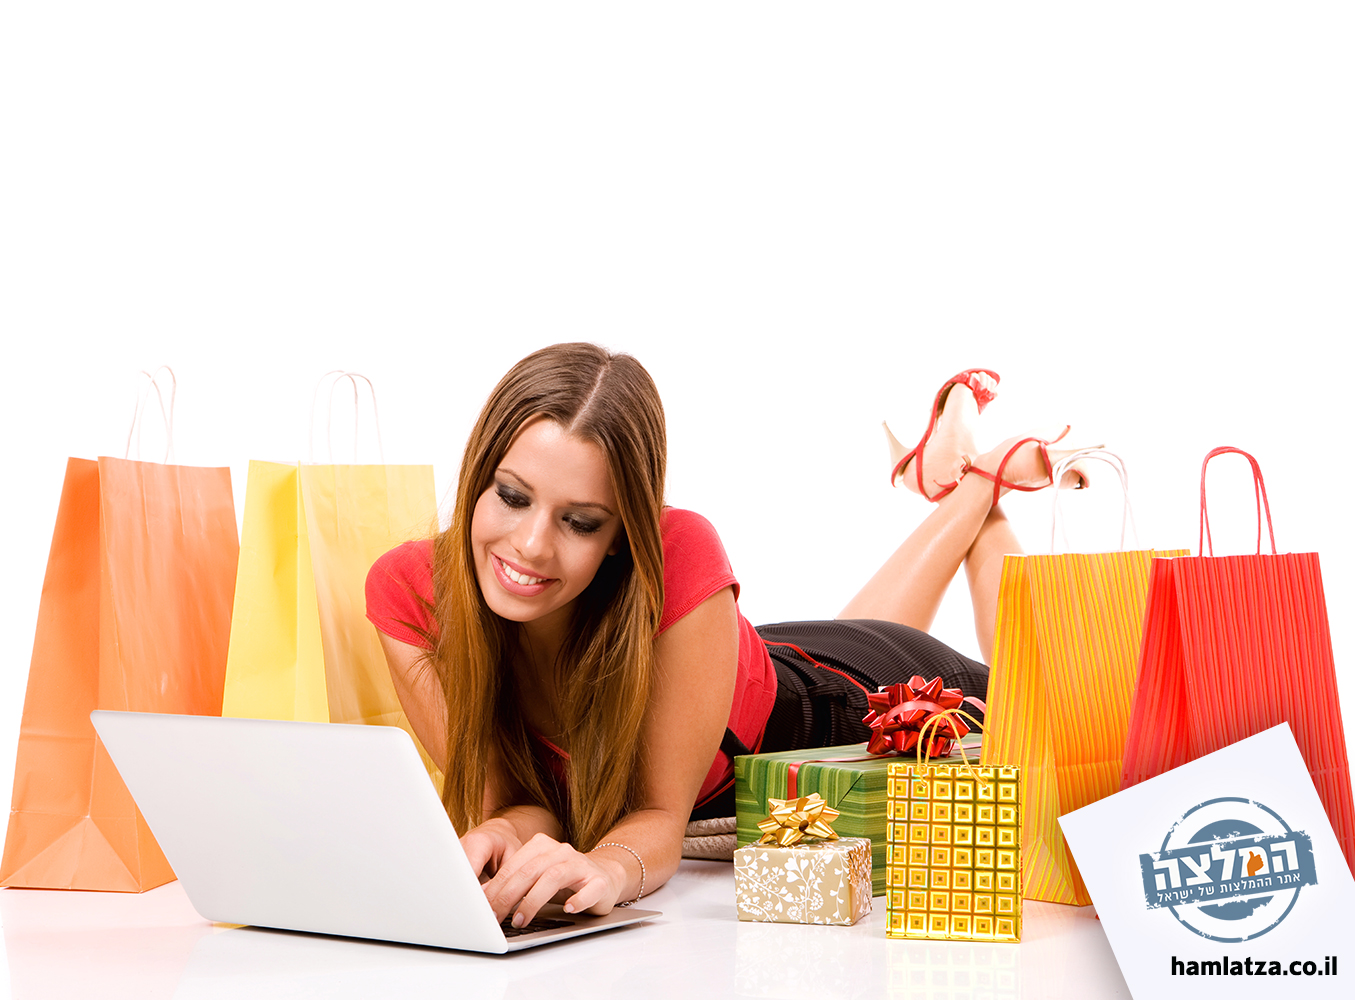 טיפים לקניות באינטרנט, קונים וחוסכים - גם אם אין לכם בעיות כלכליות!